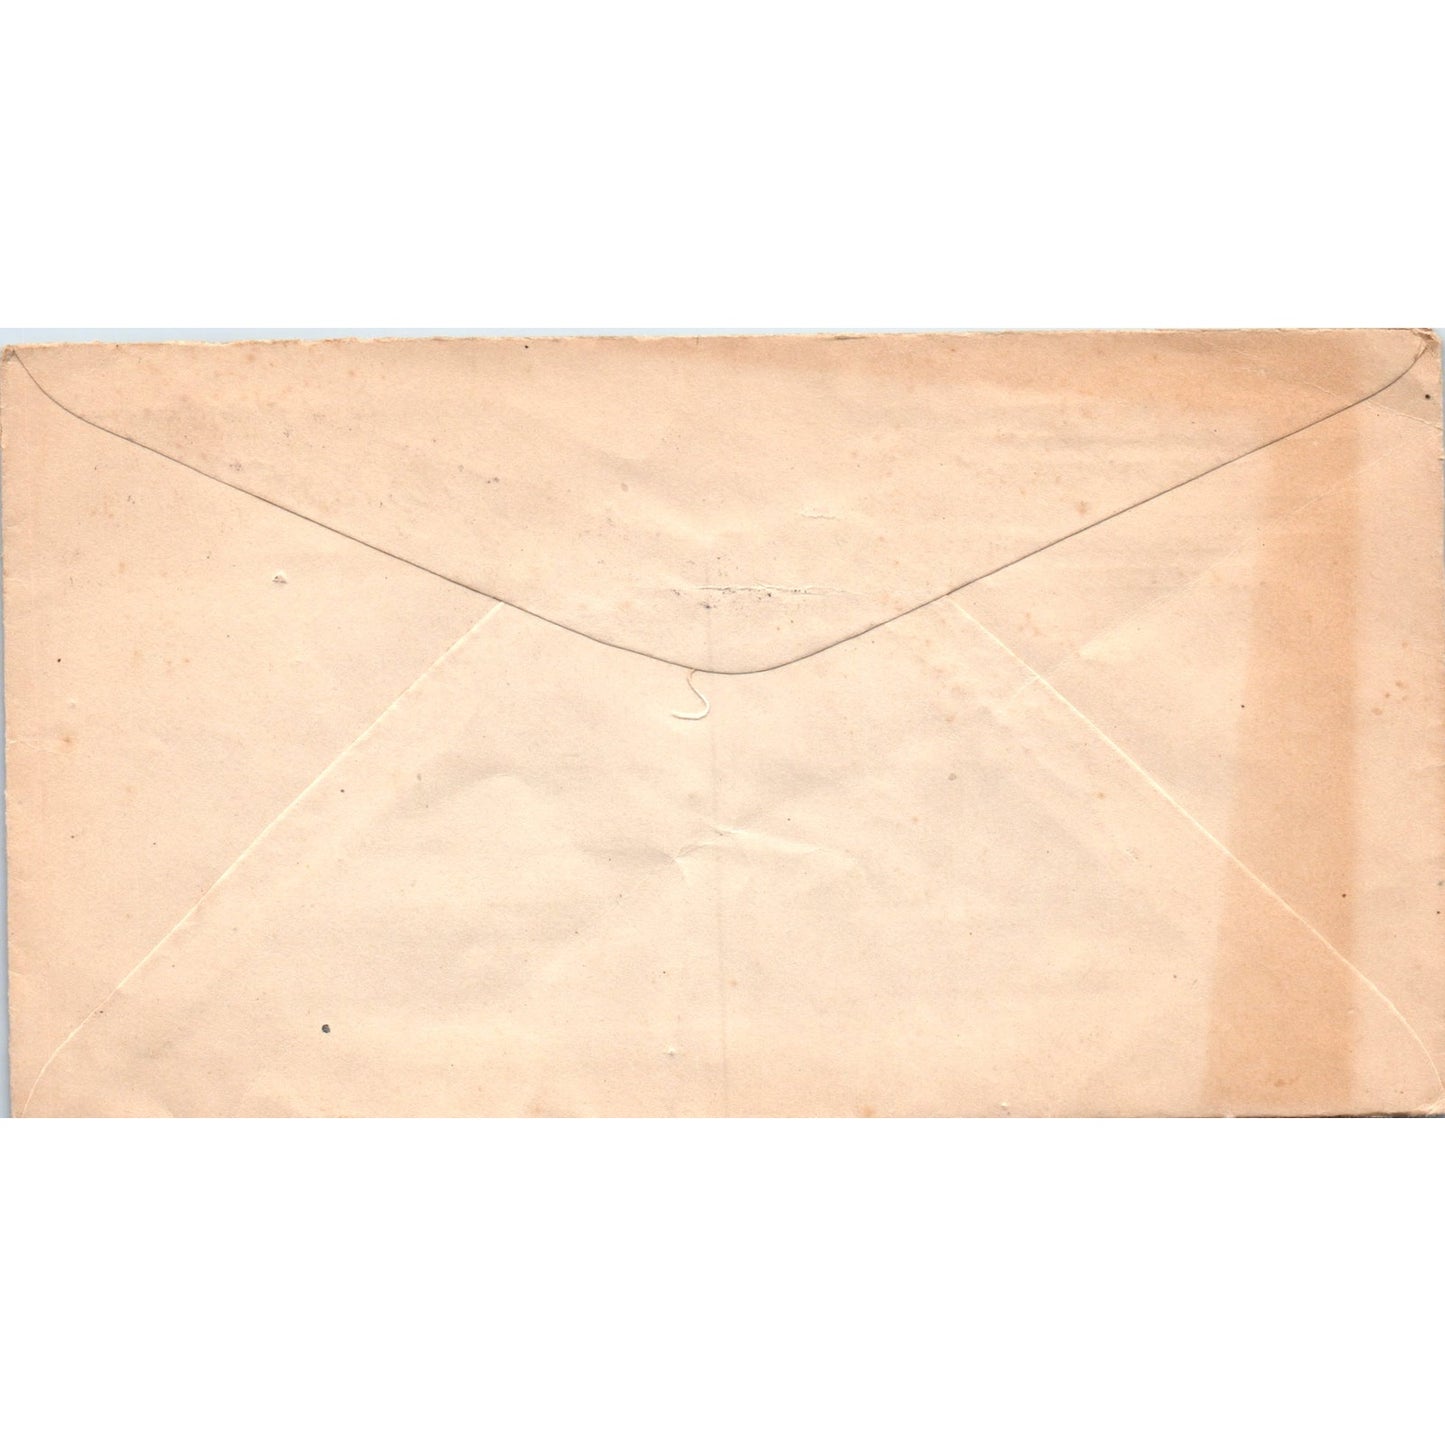 1922 John C. Winston Co Book & Bible Philadelphia Postal Cover Envelope TG7-PC3